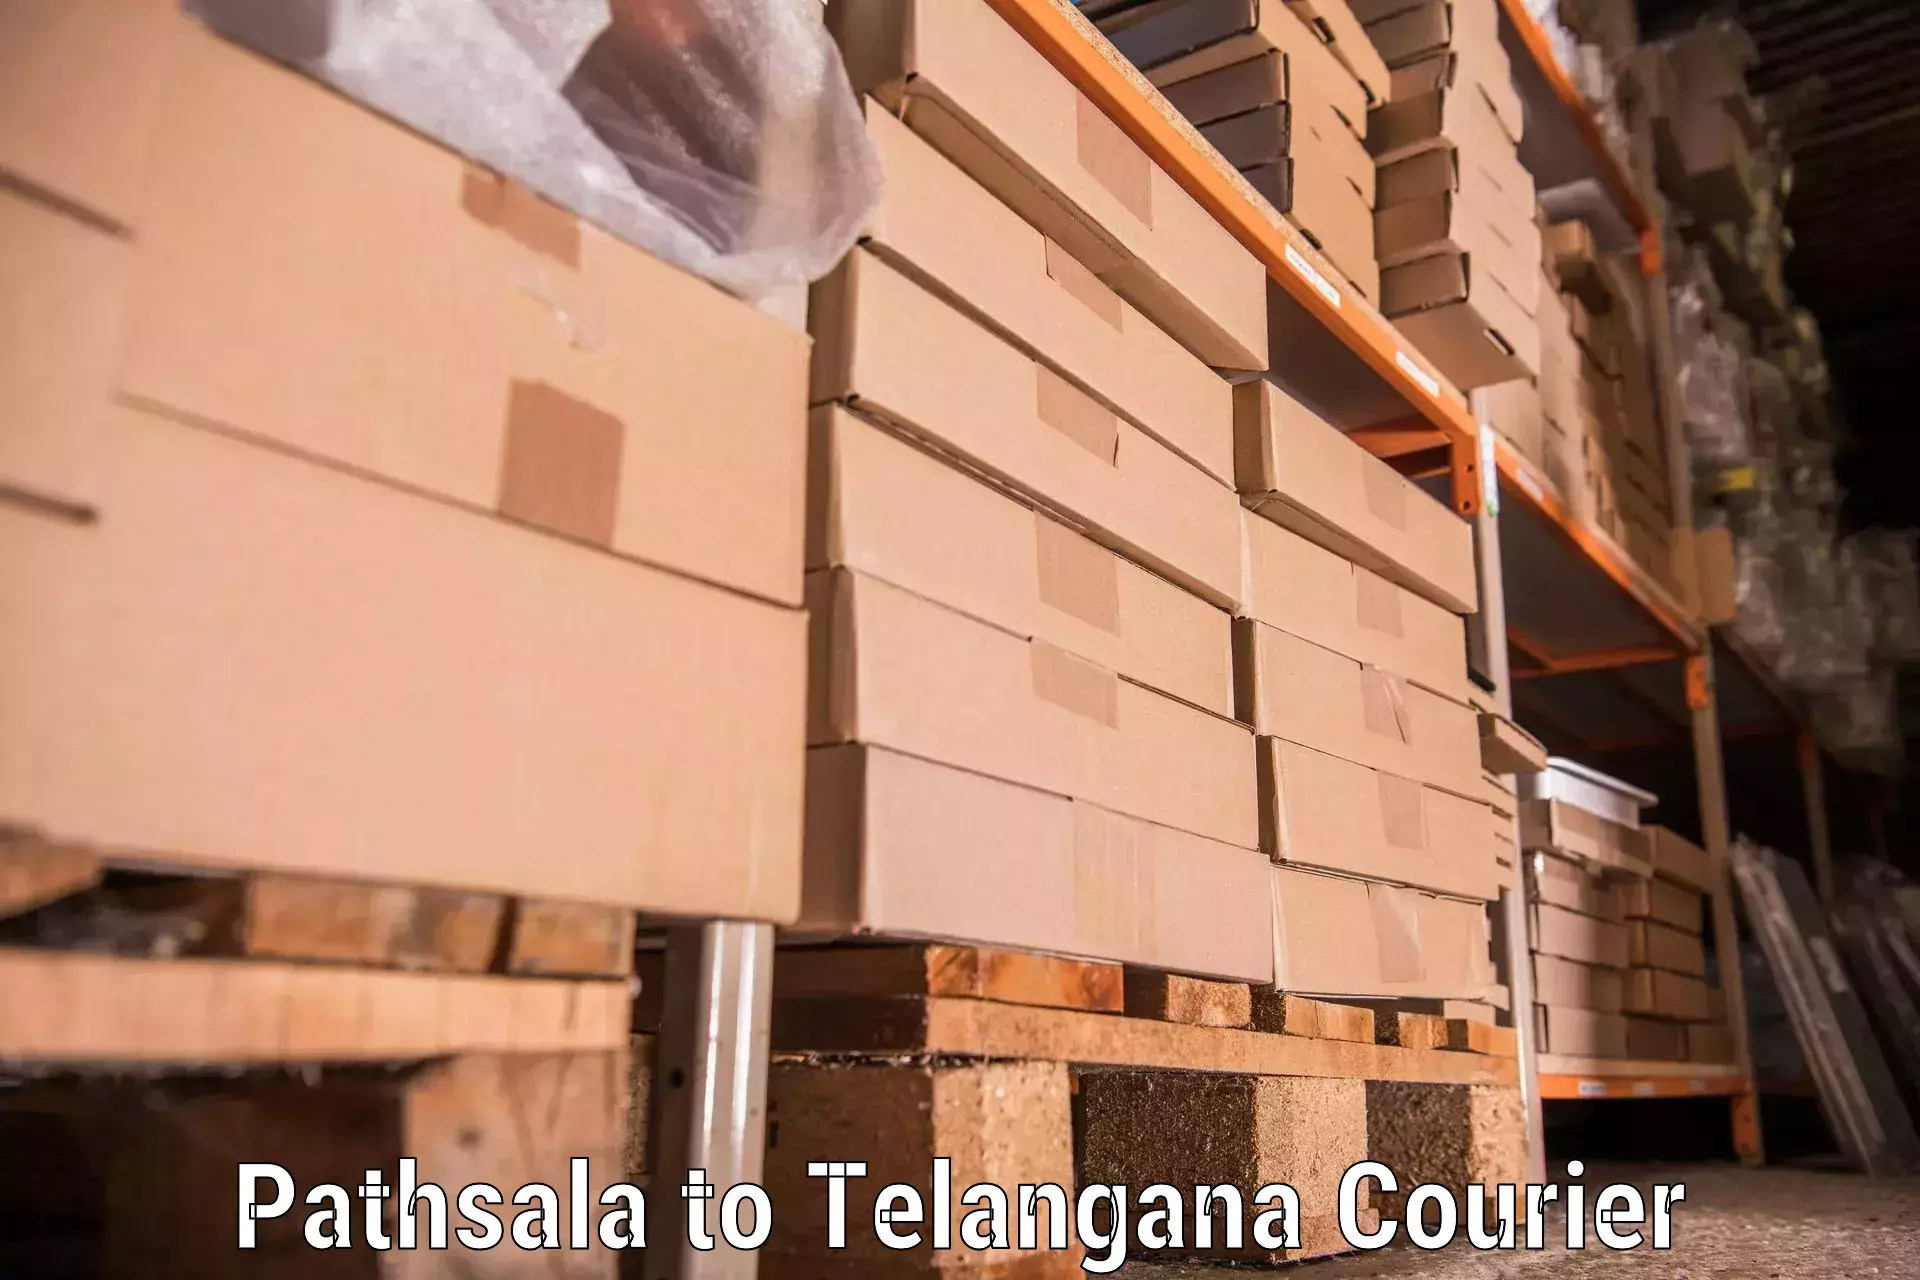 Reliable movers Pathsala to Karimnagar